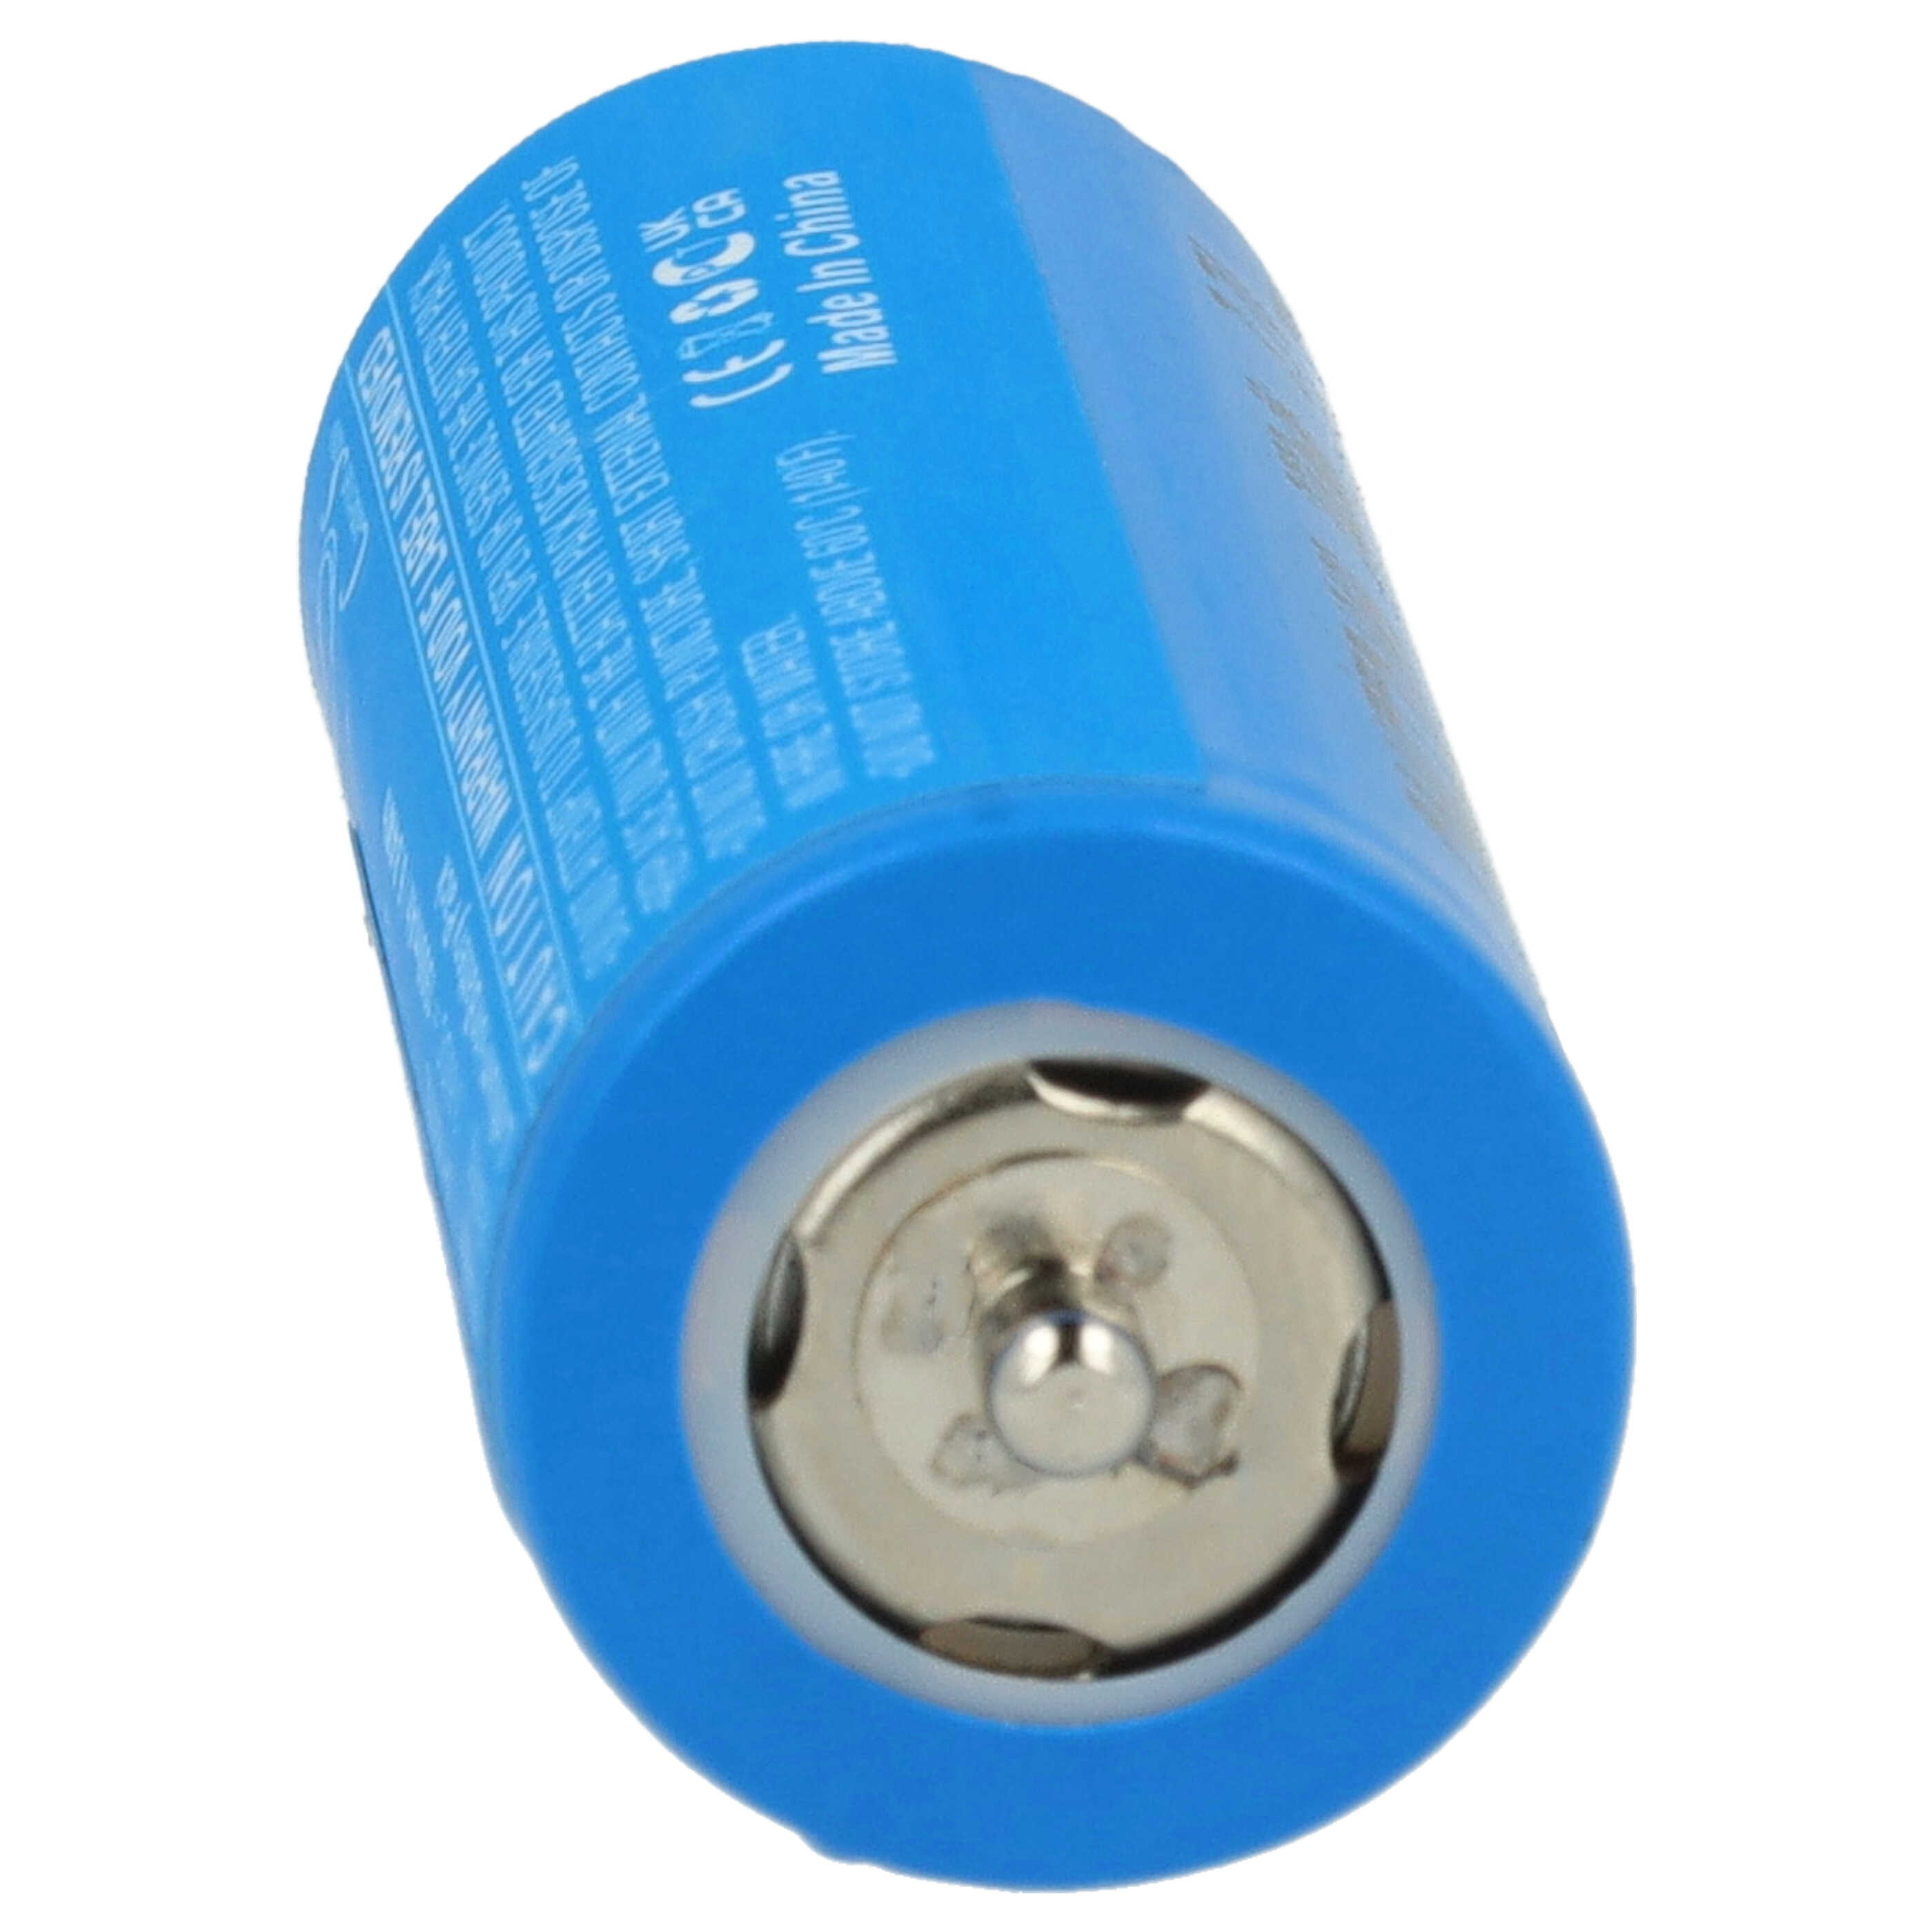 Batterie remplace Braun 67030924, 3018765, 67030925, 67030625 pour rasoir électrique - 1900mAh 3,6V Li-ion